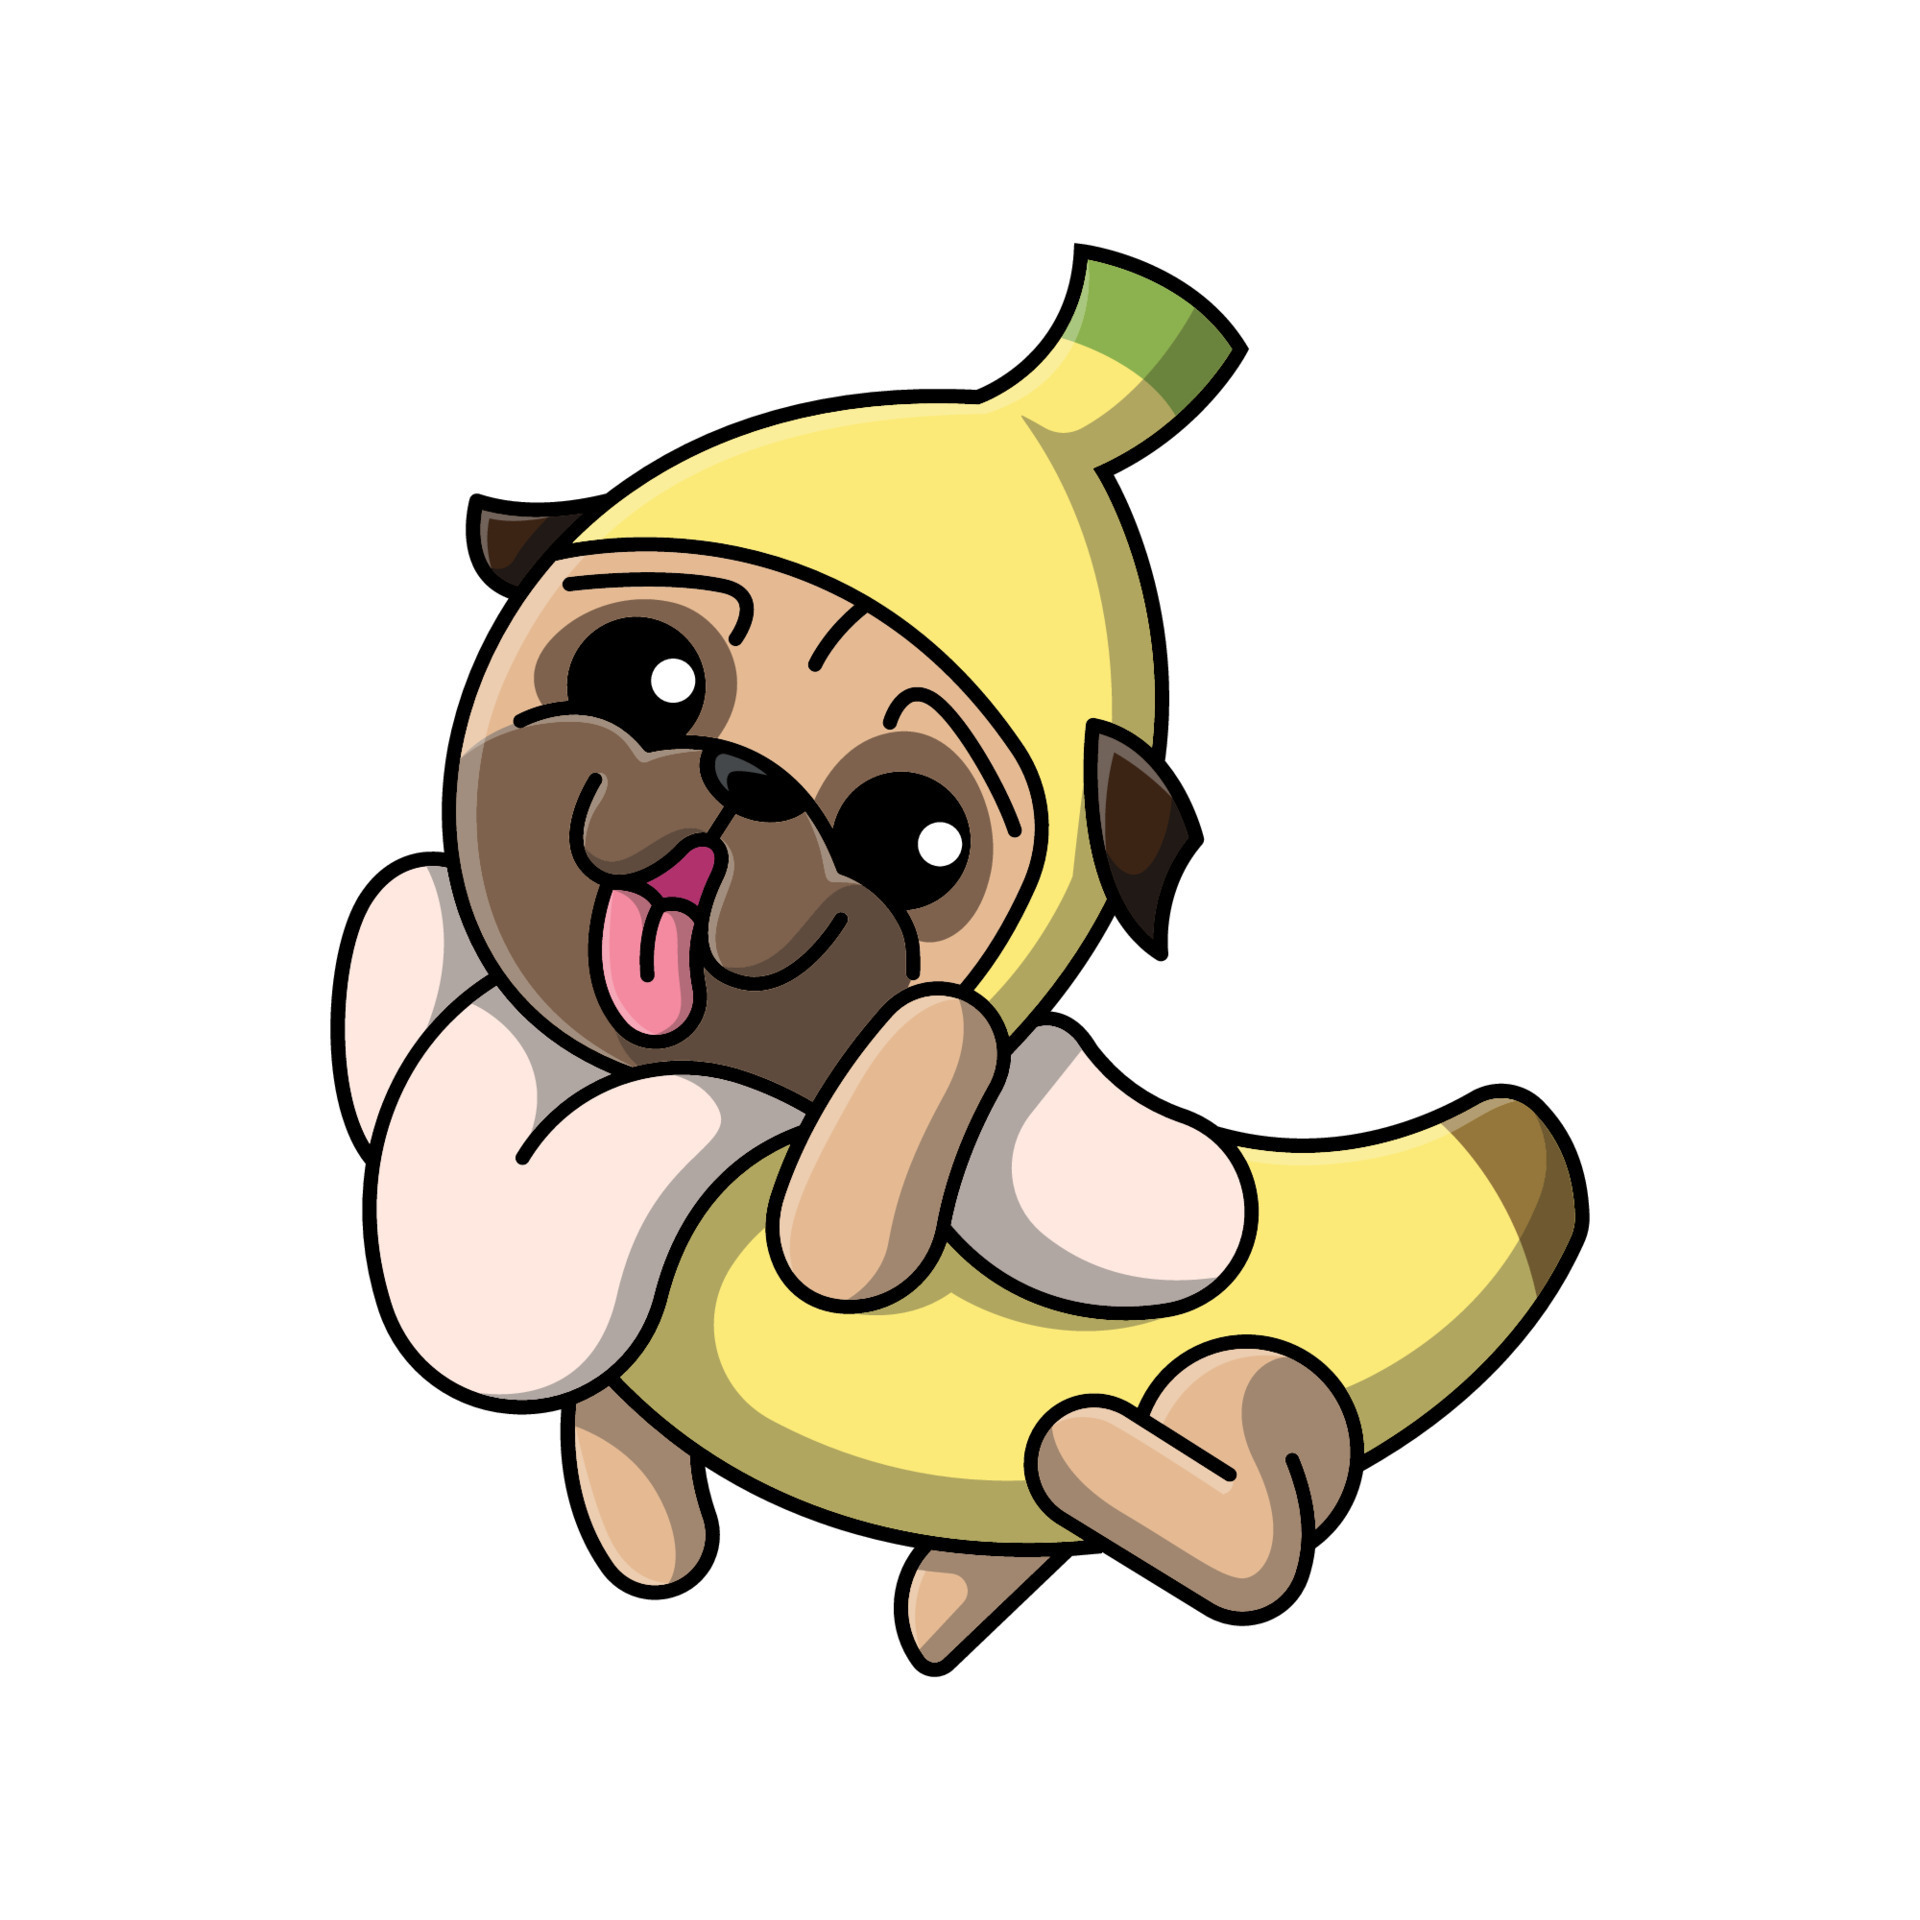 il carino carlino cane è indossare un' Banana costume cartone animato  illustrazione 12092790 Arte vettoriale a Vecteezy